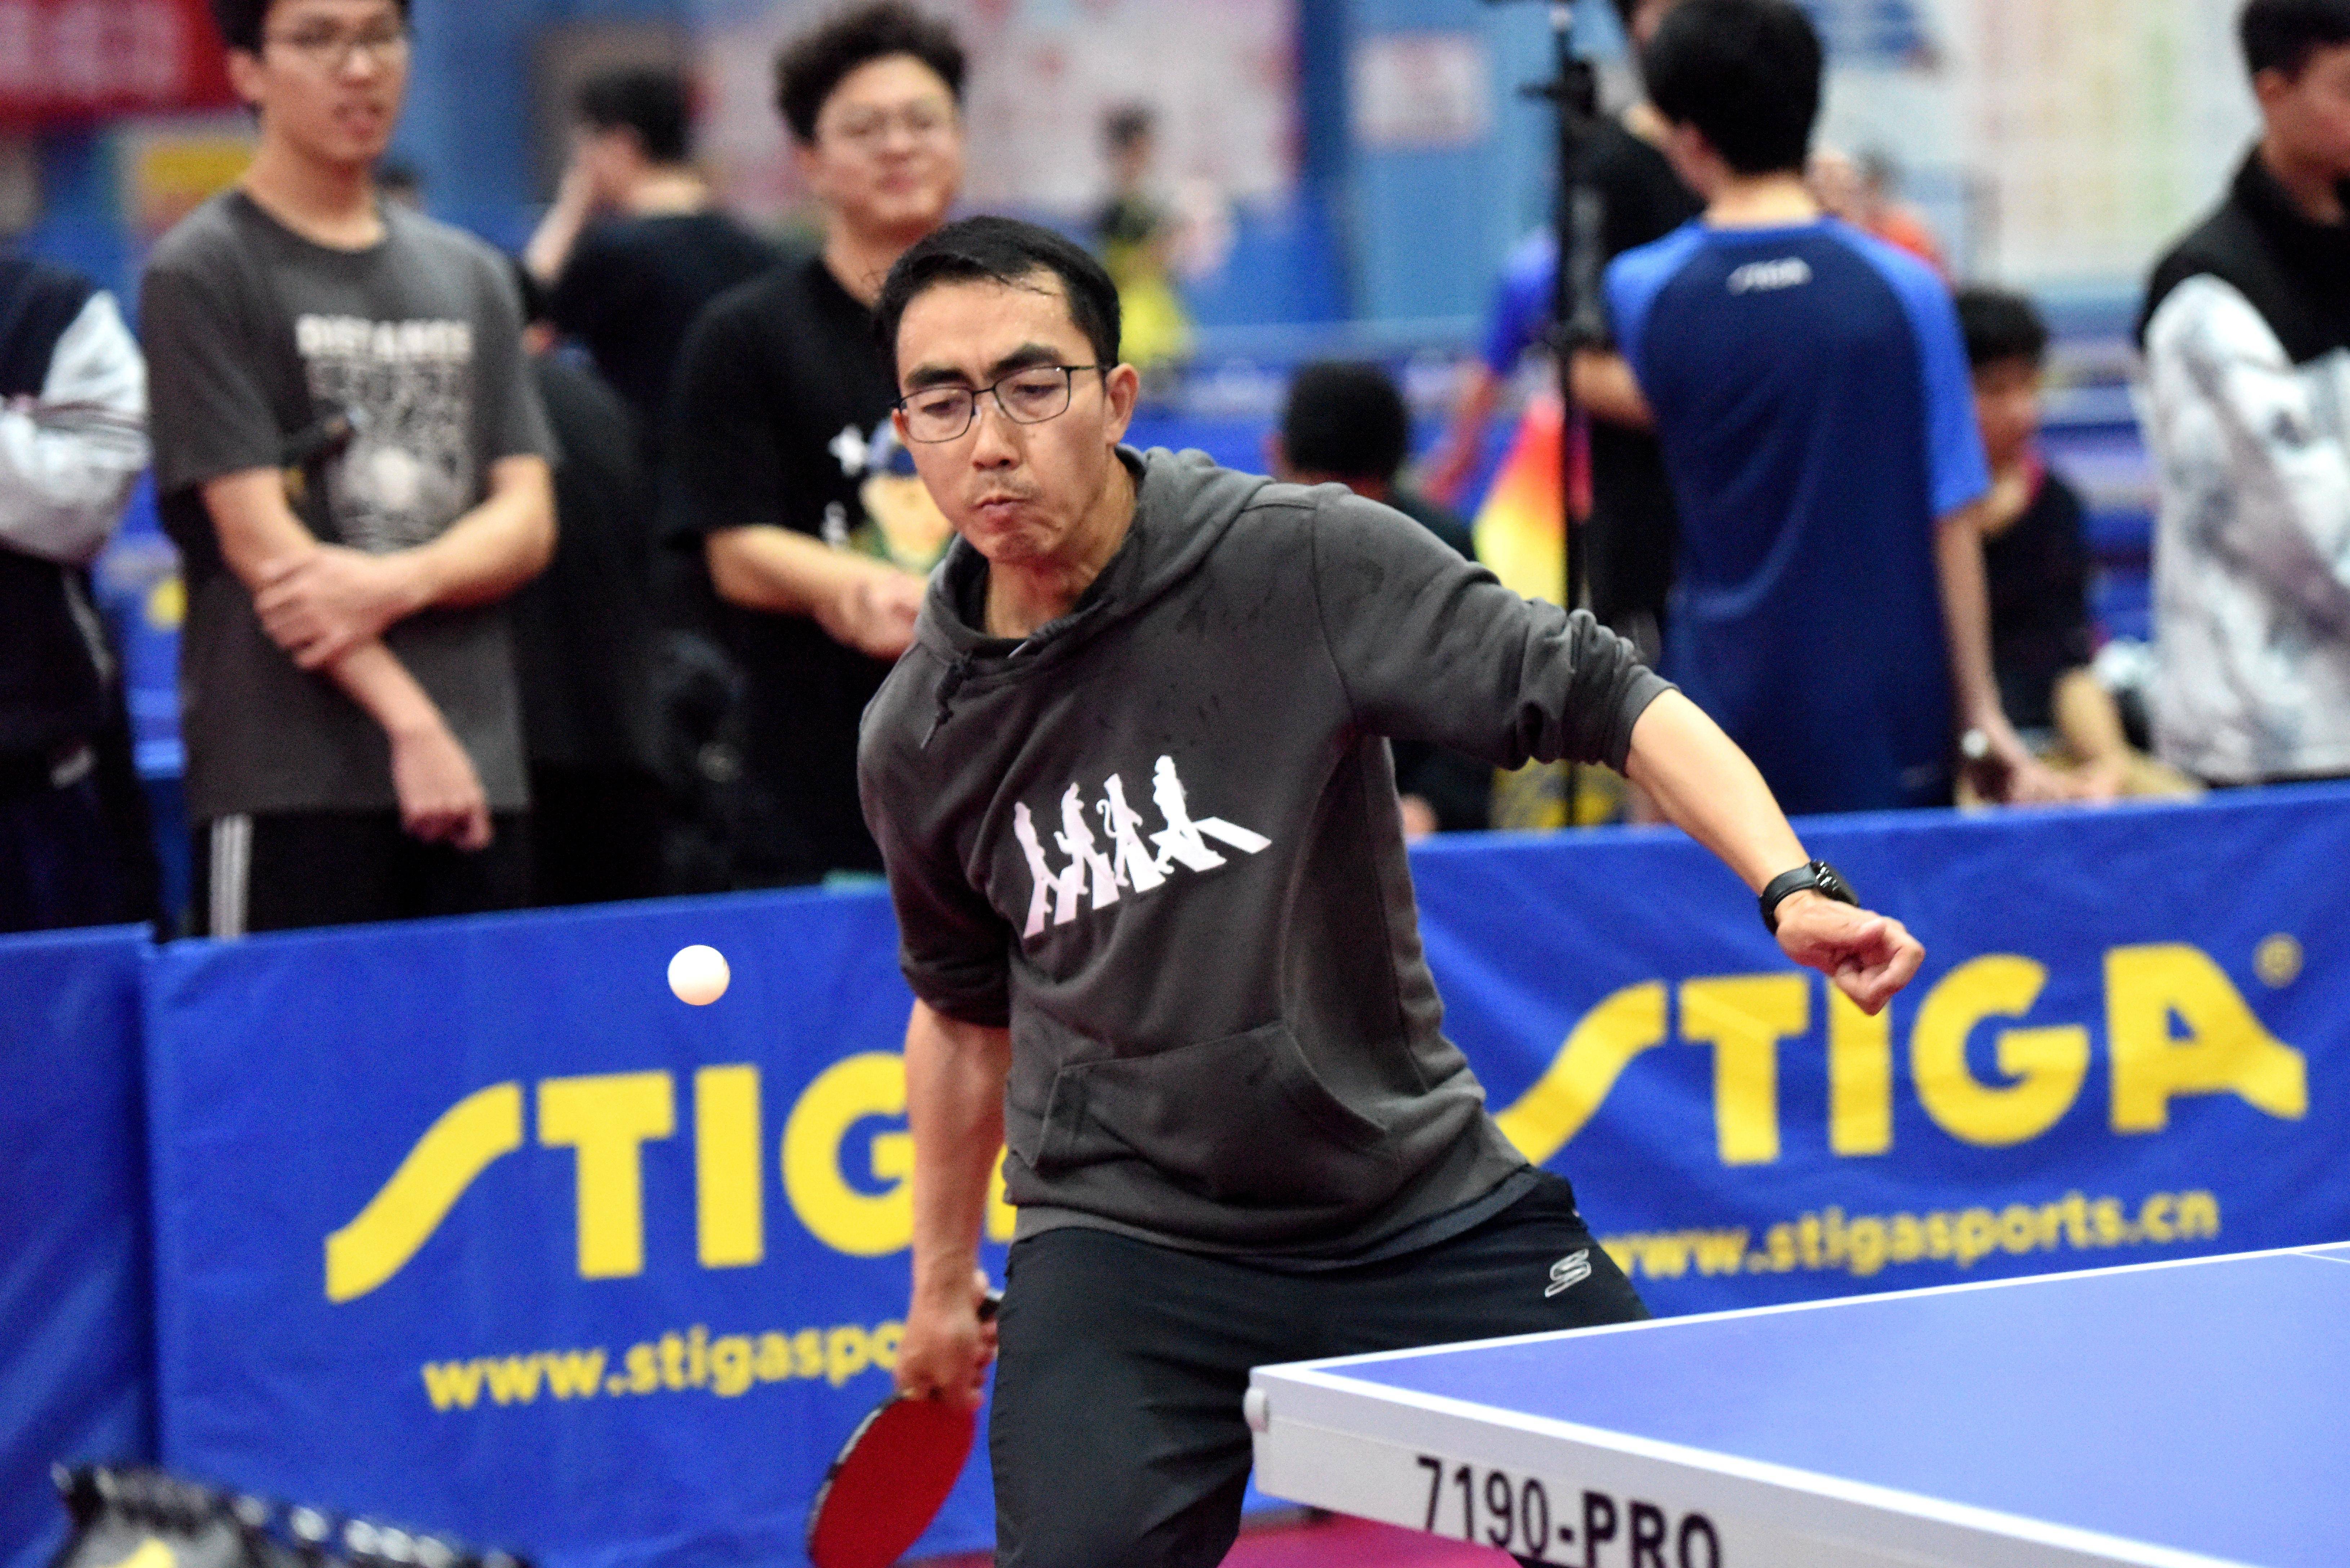 【168sports】桂林市第二十二届乒乓球比赛落幕